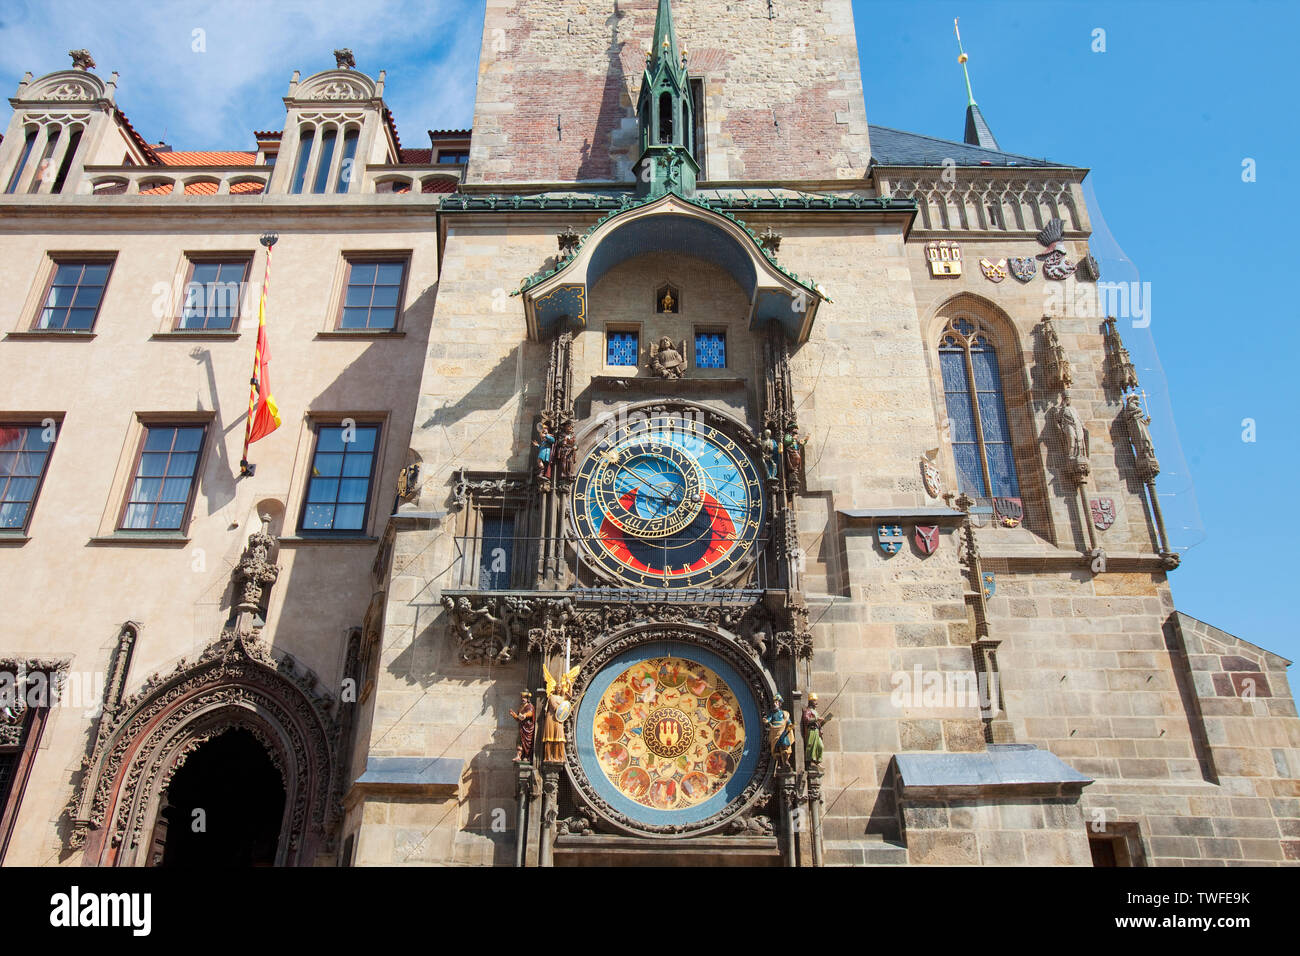 Praga, República Checa - Reloj Astronómico en la Plaza de la Ciudad Vieja Foto de stock